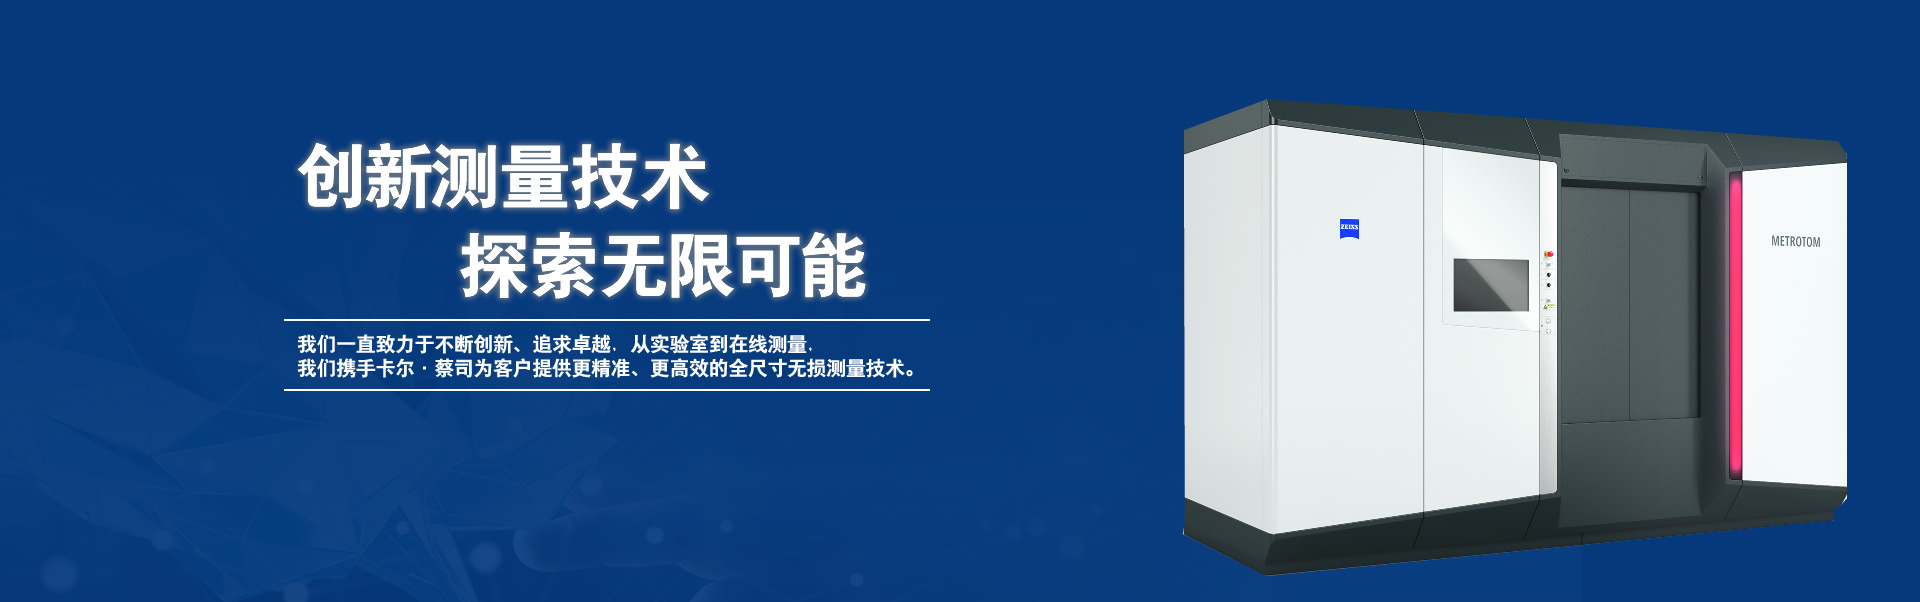 则初（上海）机电设备有限公司公司介绍